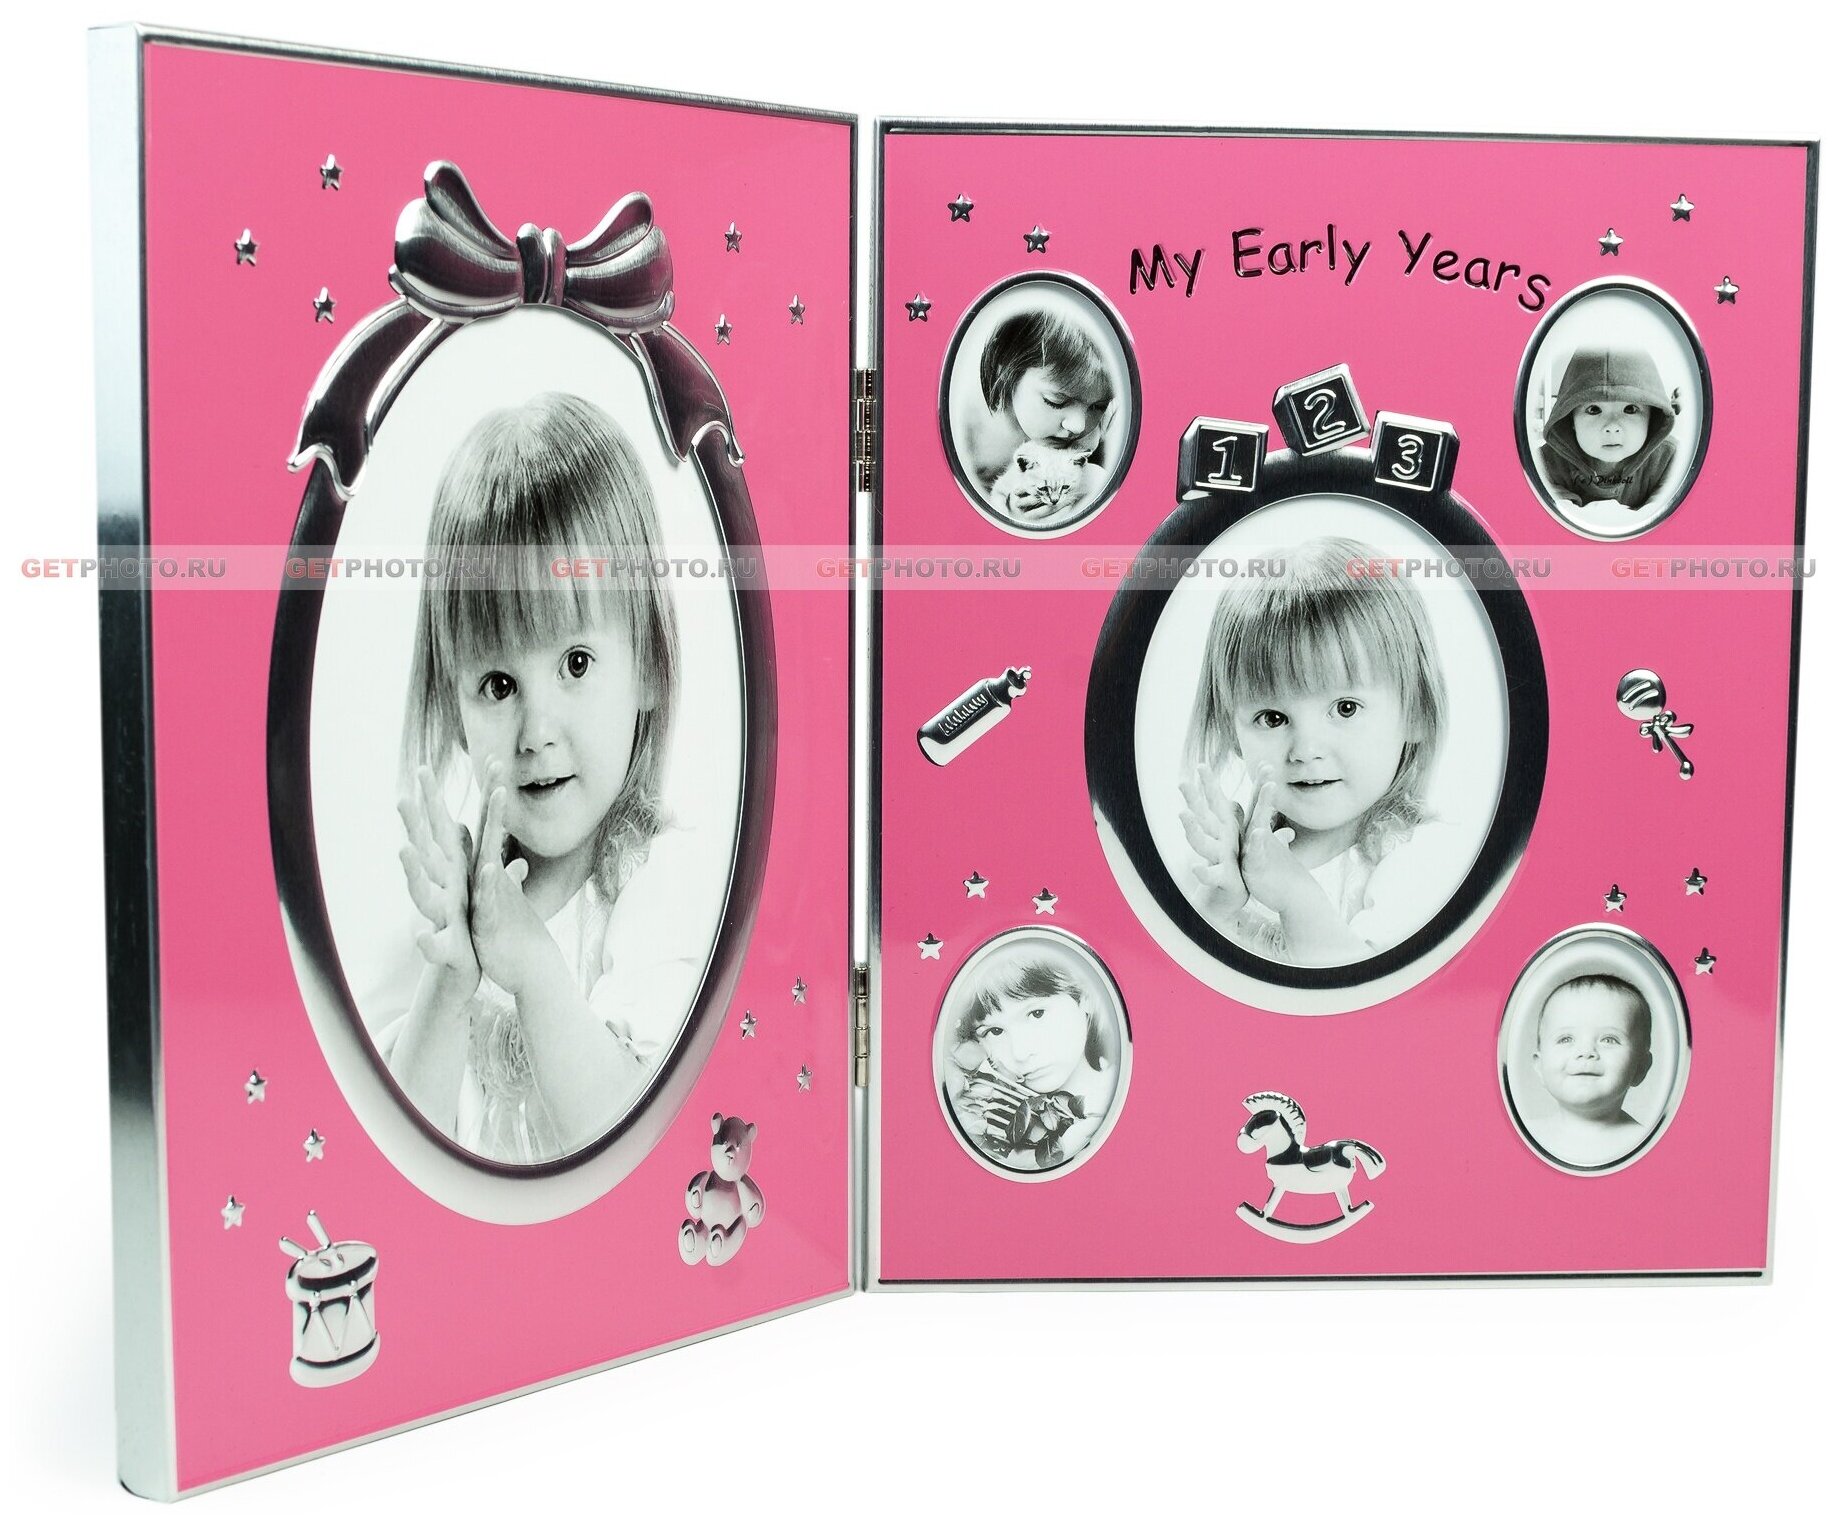 Детская фоторамка для 6 фотографий, мультирамка-коллаж, моё детство, книжка, розовая GF 4054